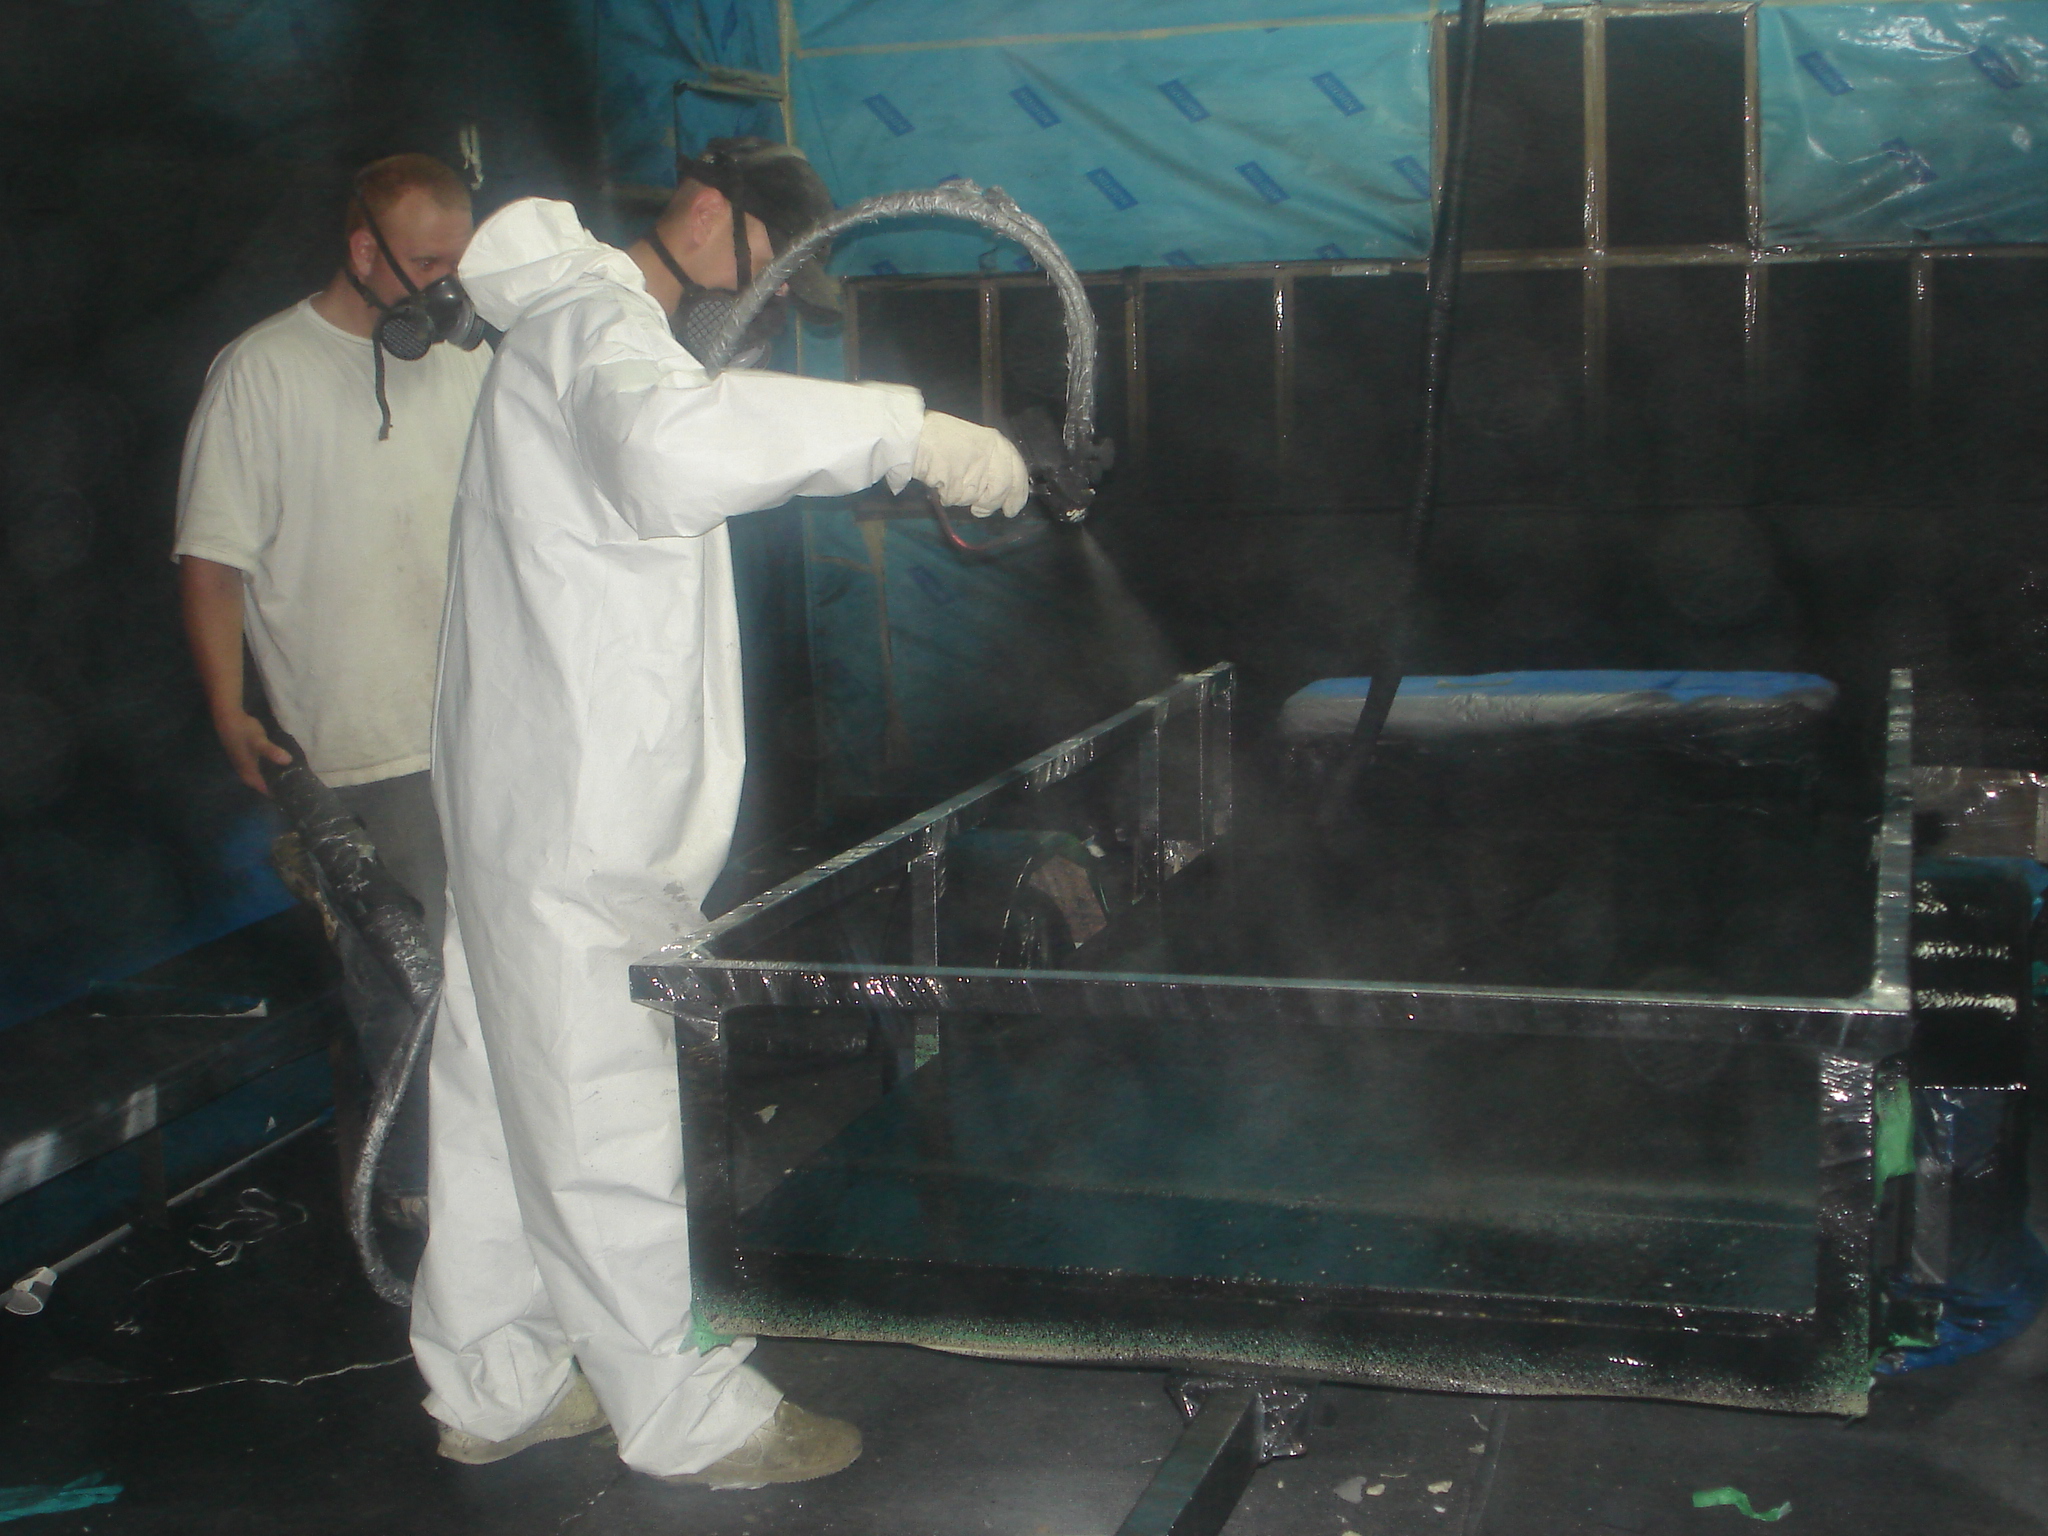 Applying foam in an industrial setting